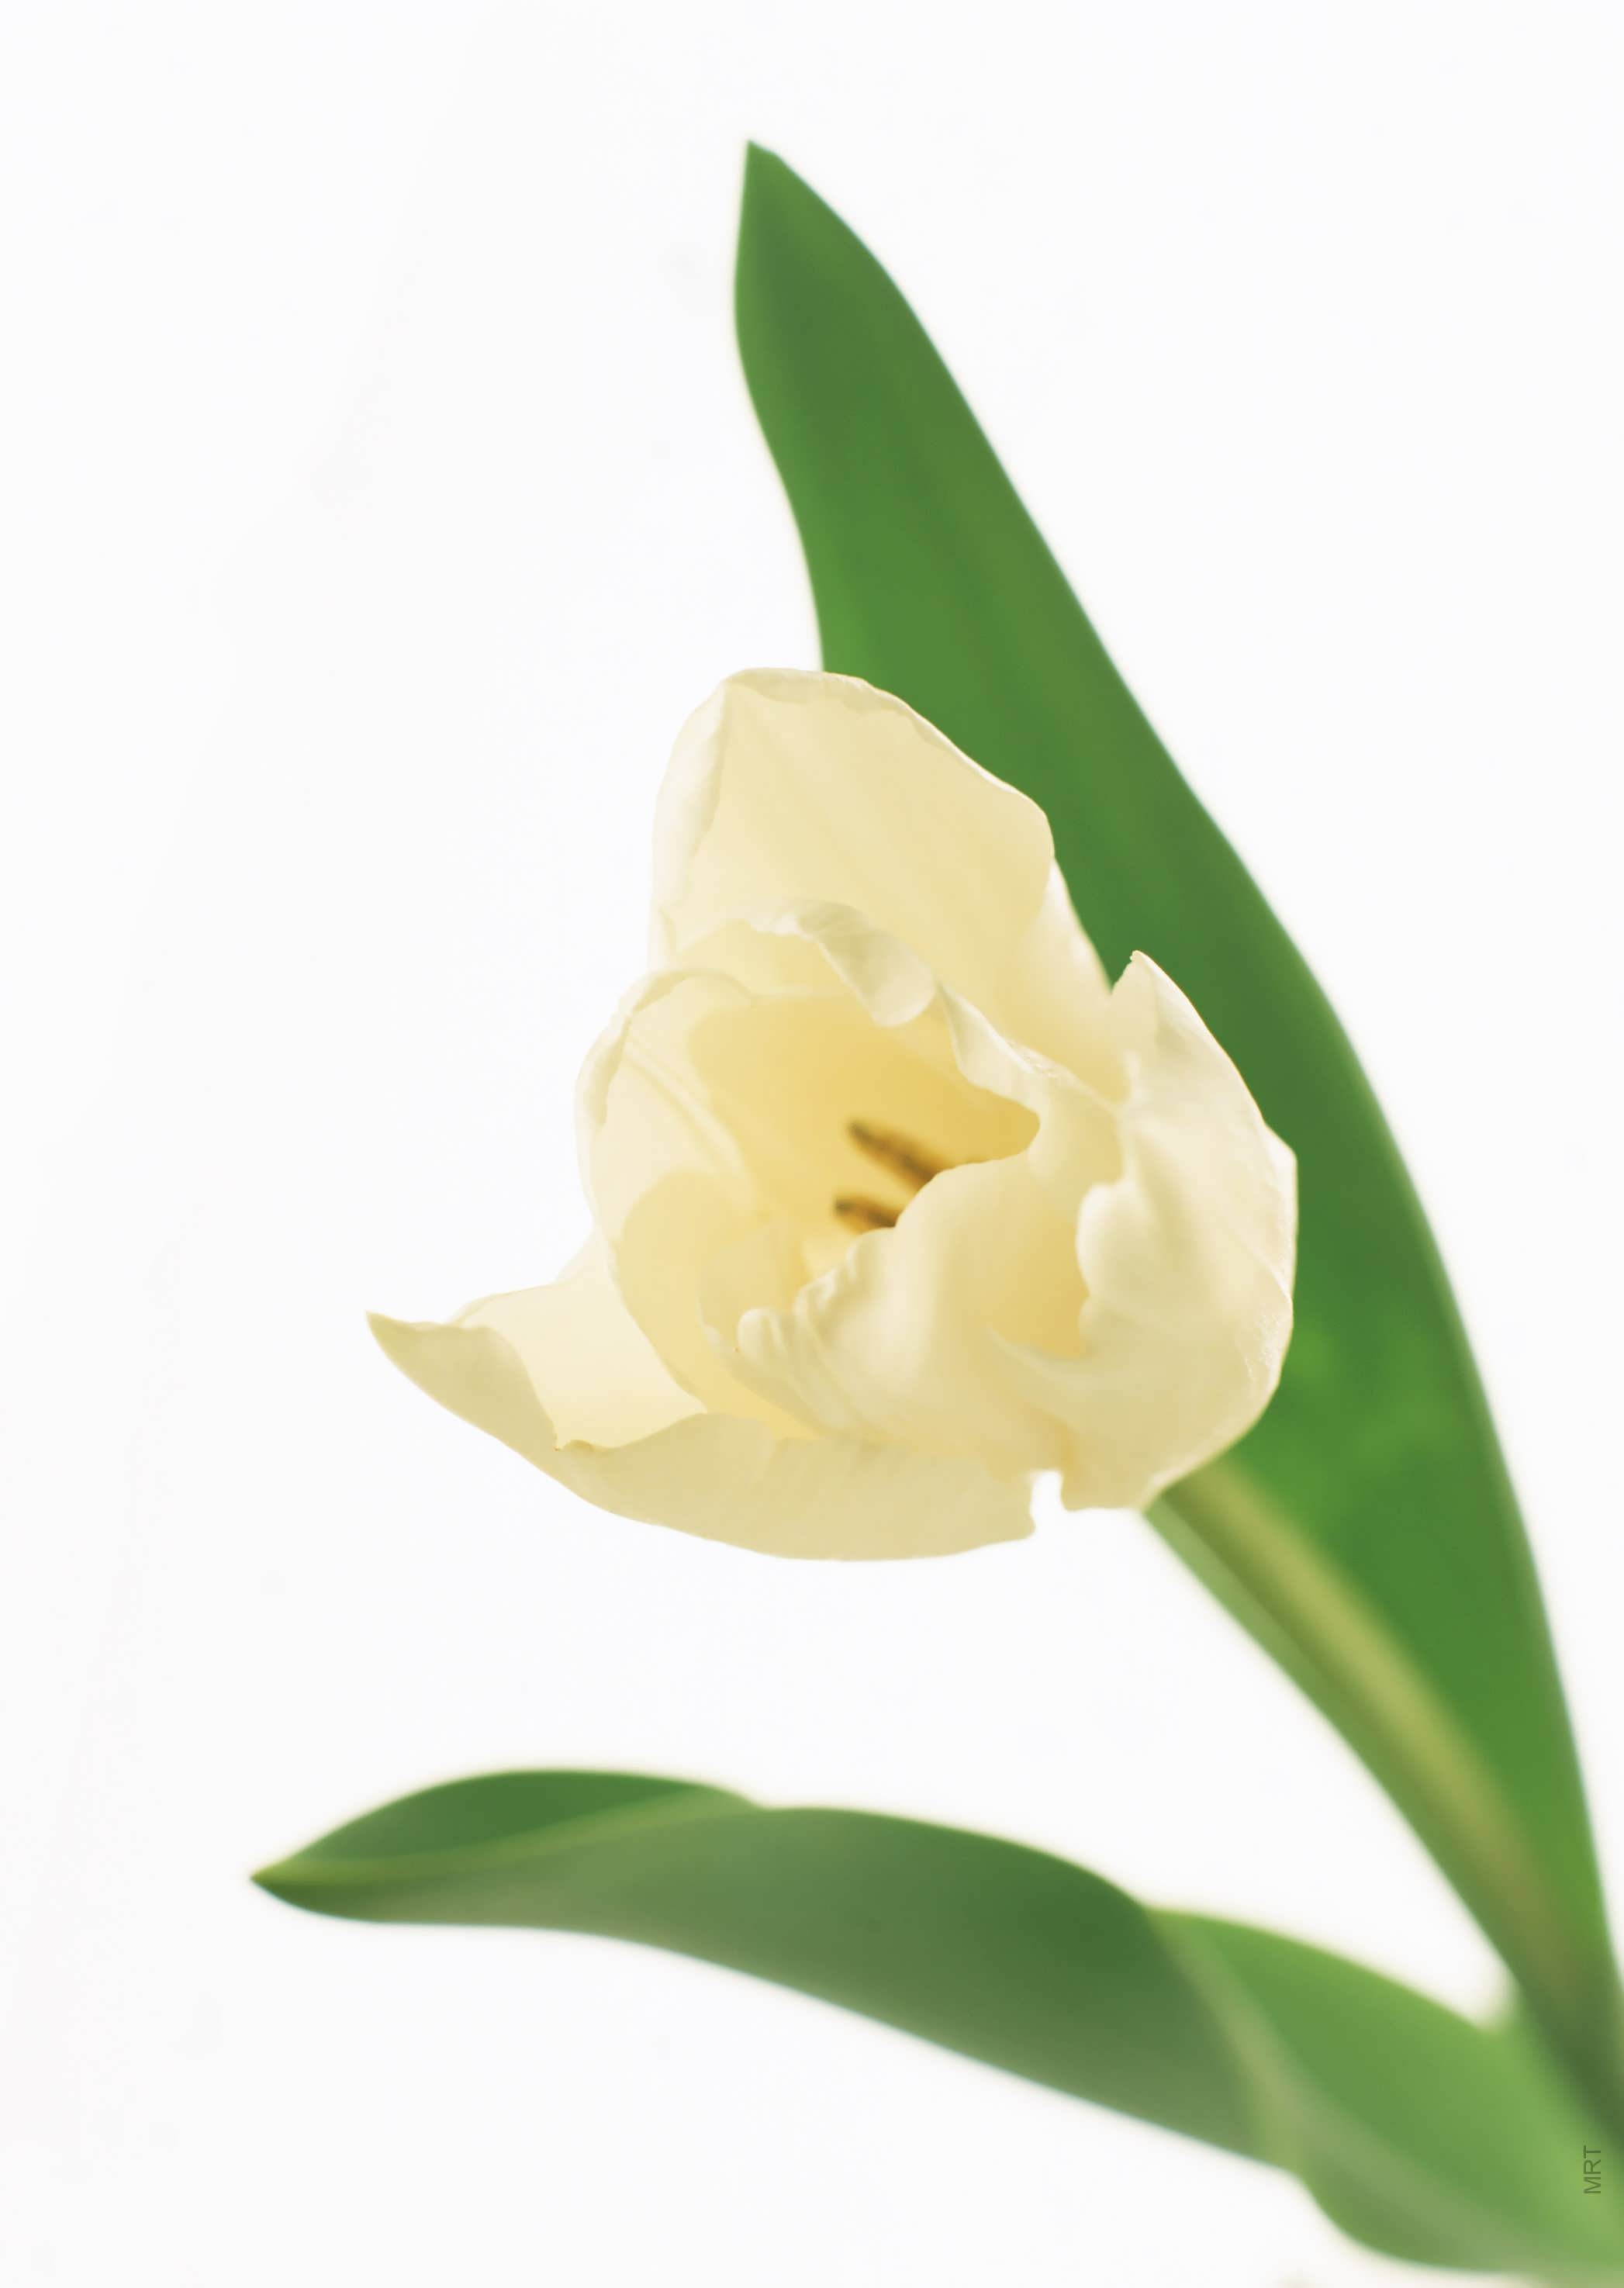 flowers, tulips, white background, white flowers - desktop wallpaper